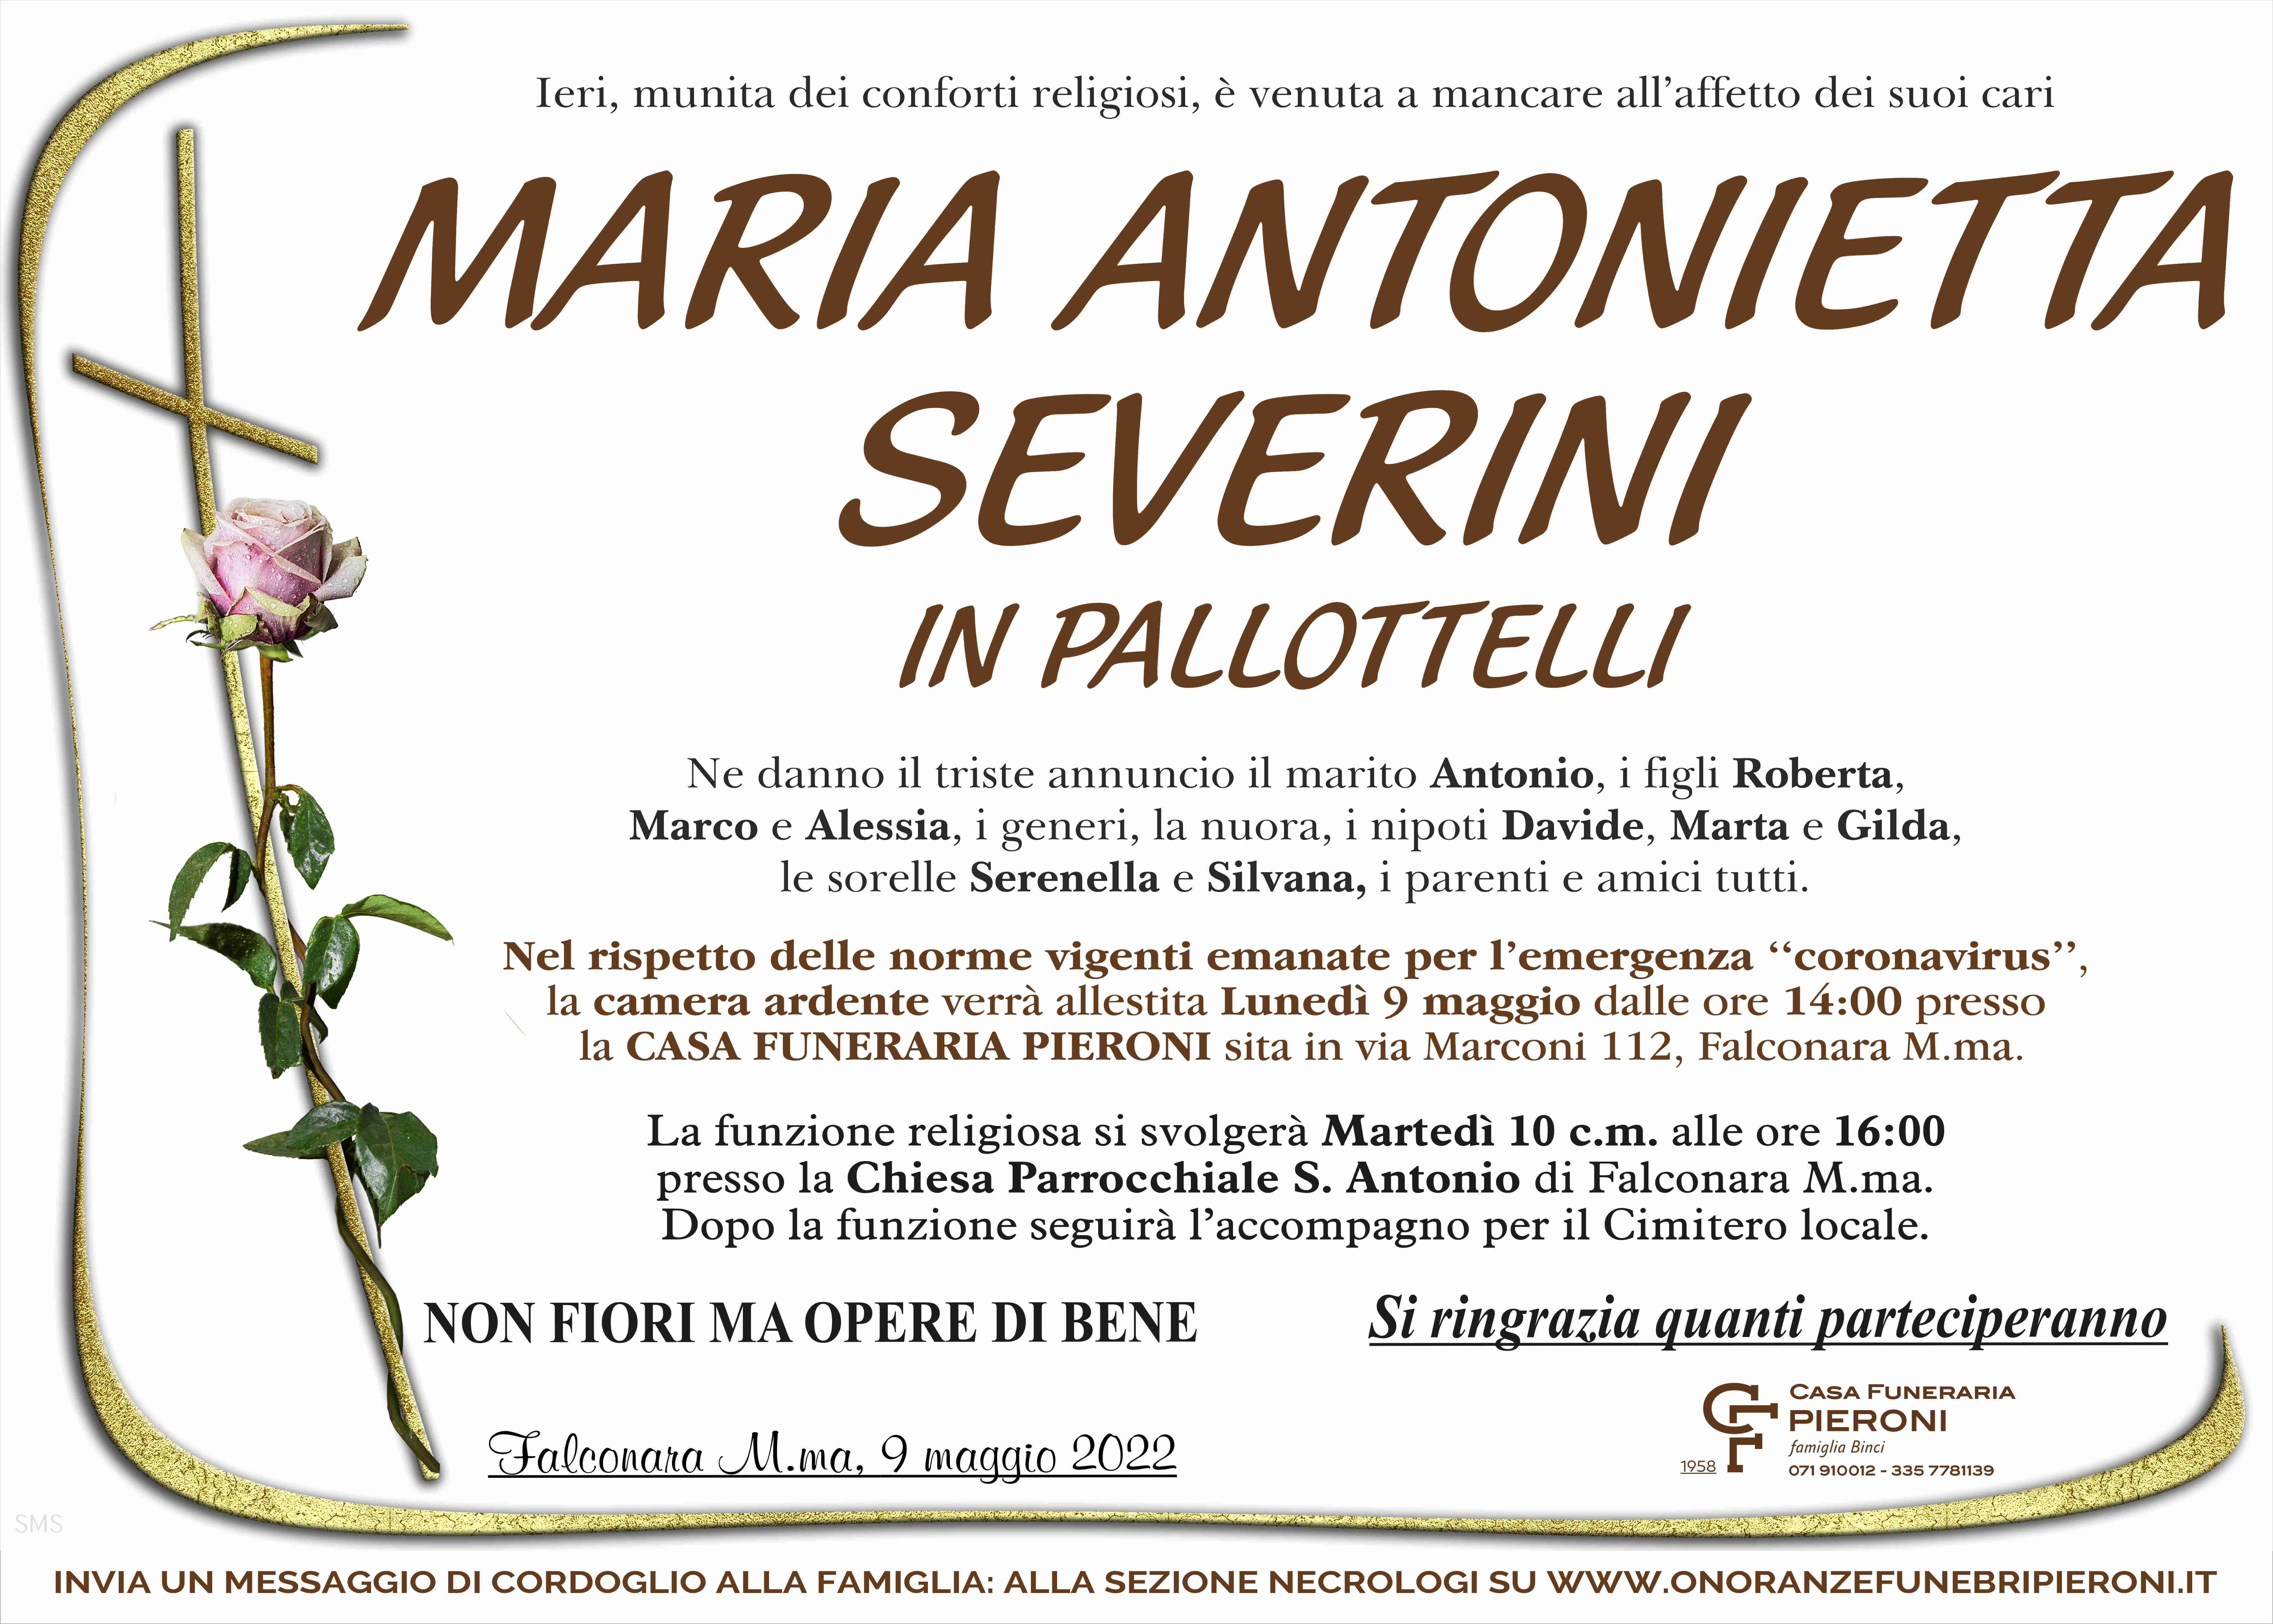 Maria Antonietta Severini